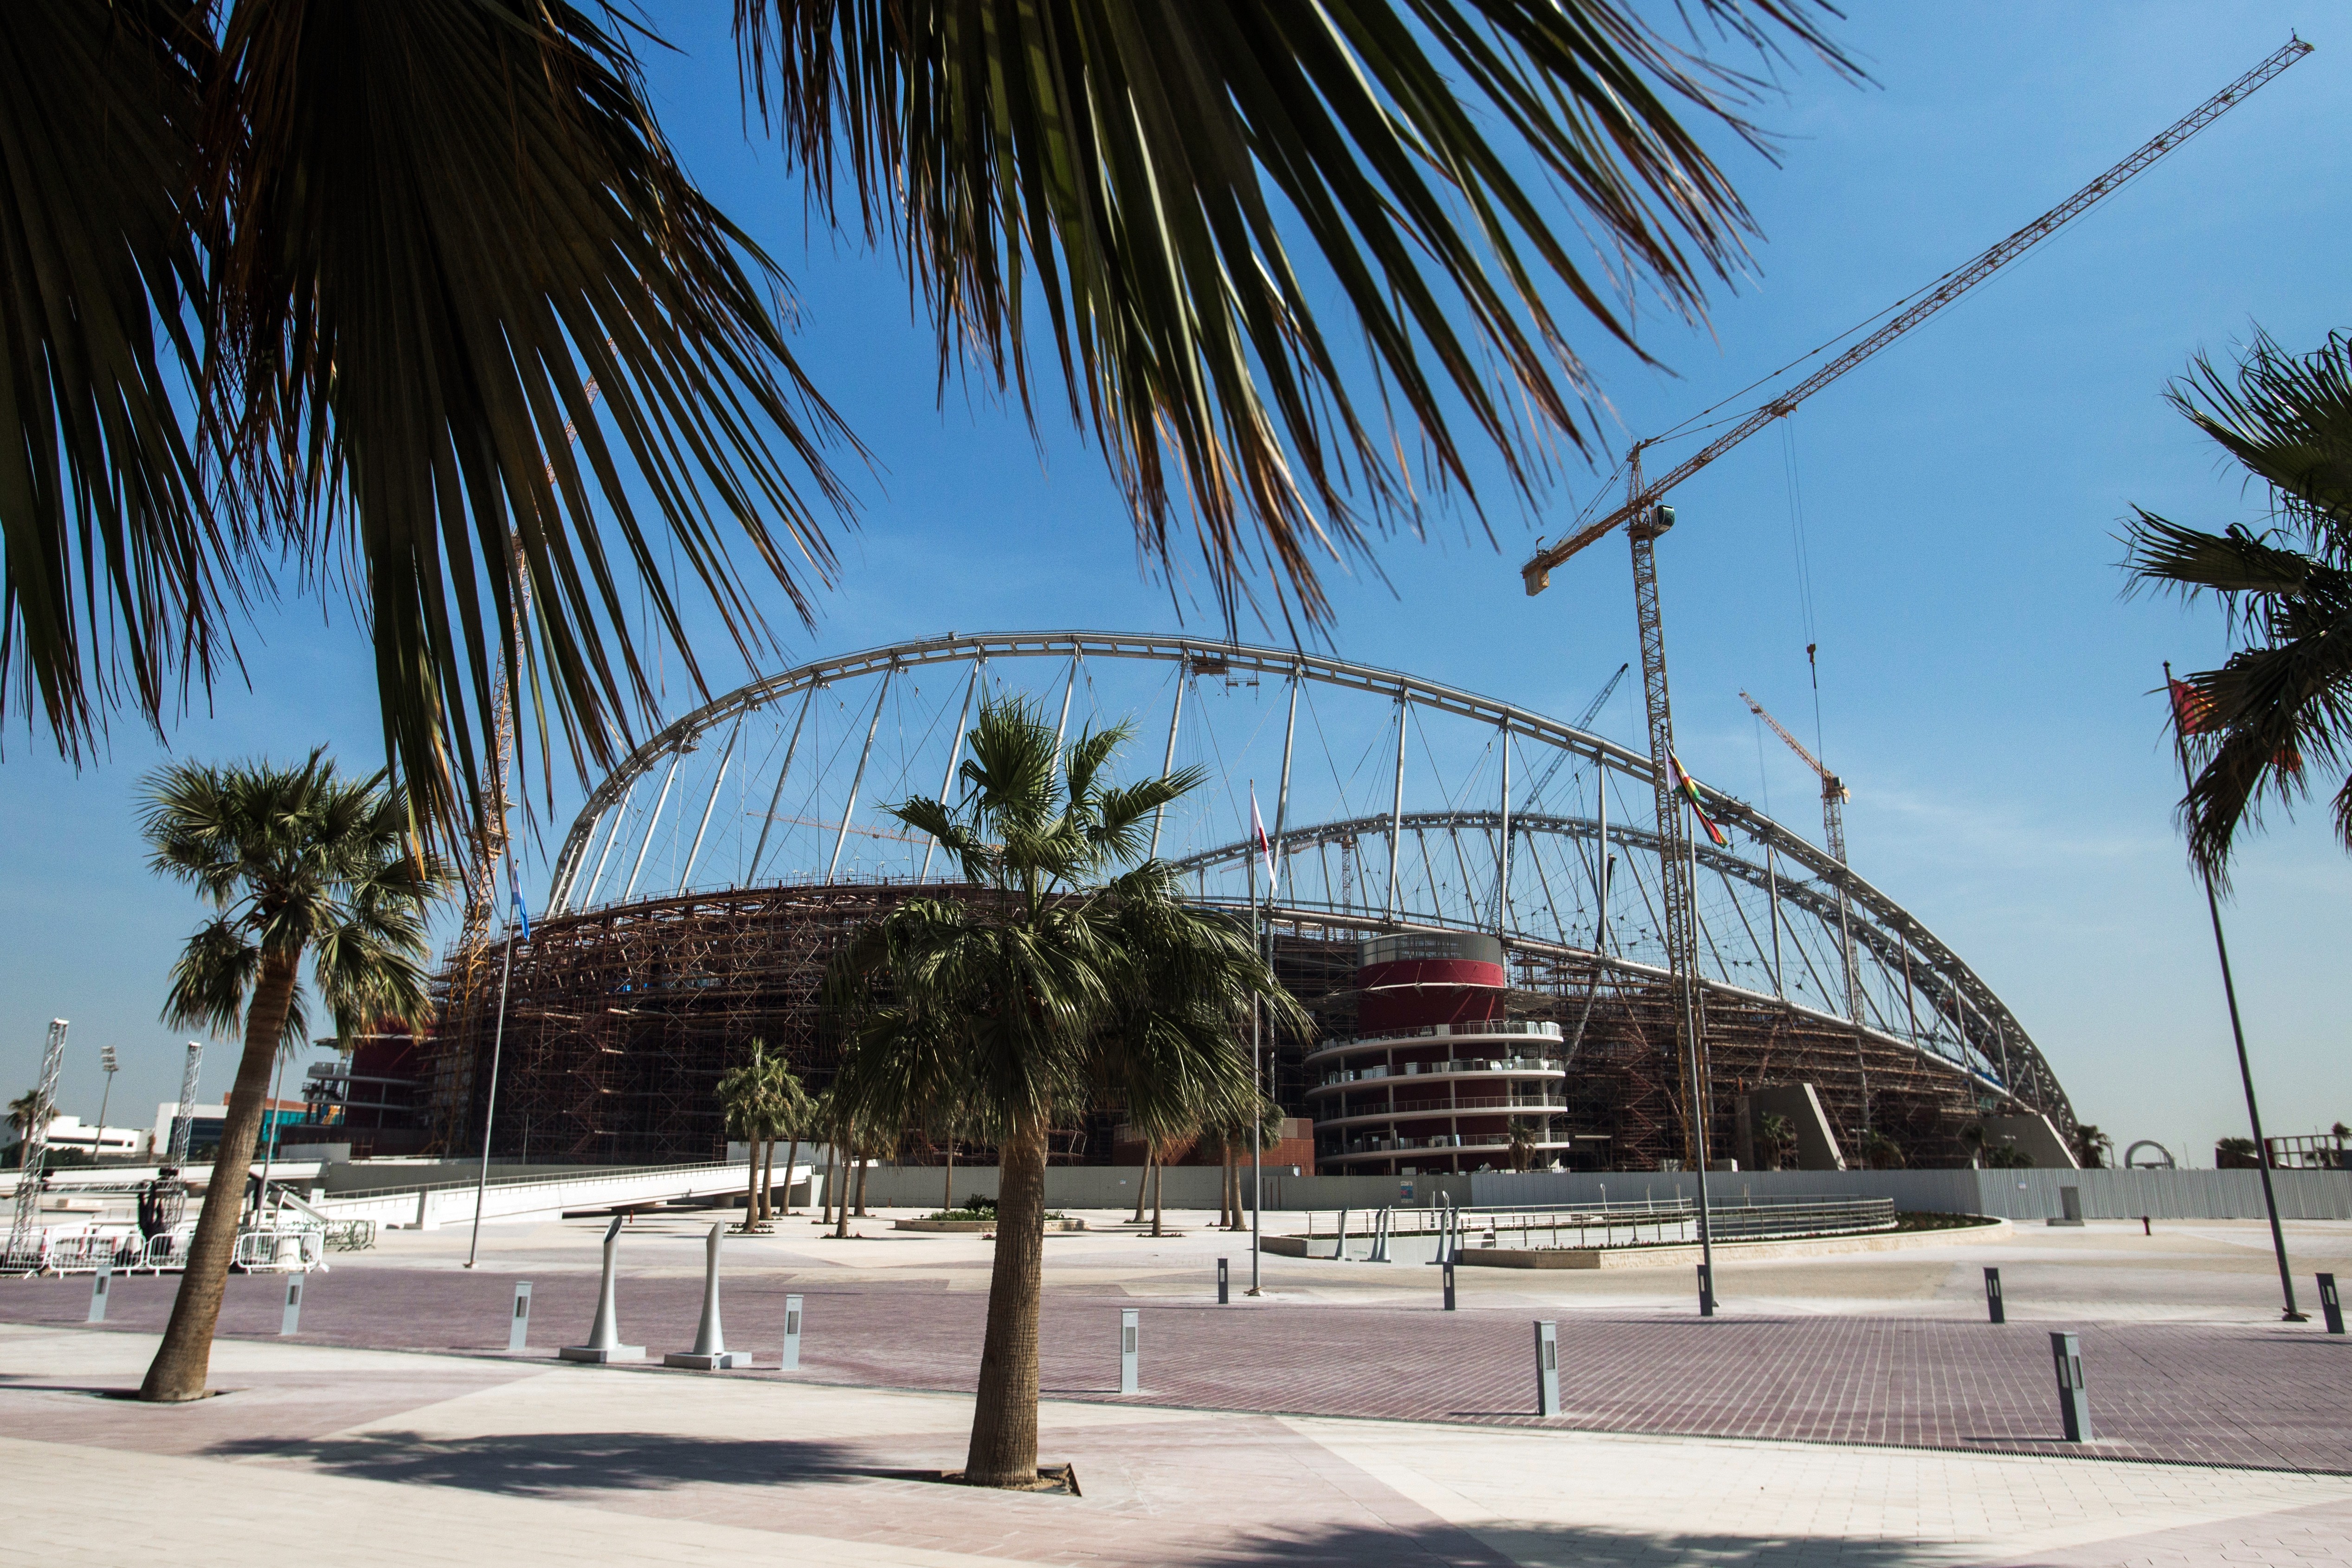 Строительство стадиона "Халифа" в Дохе, столице Катара. Фото:&copy; РИА Новости/Абдулкадер Хадж